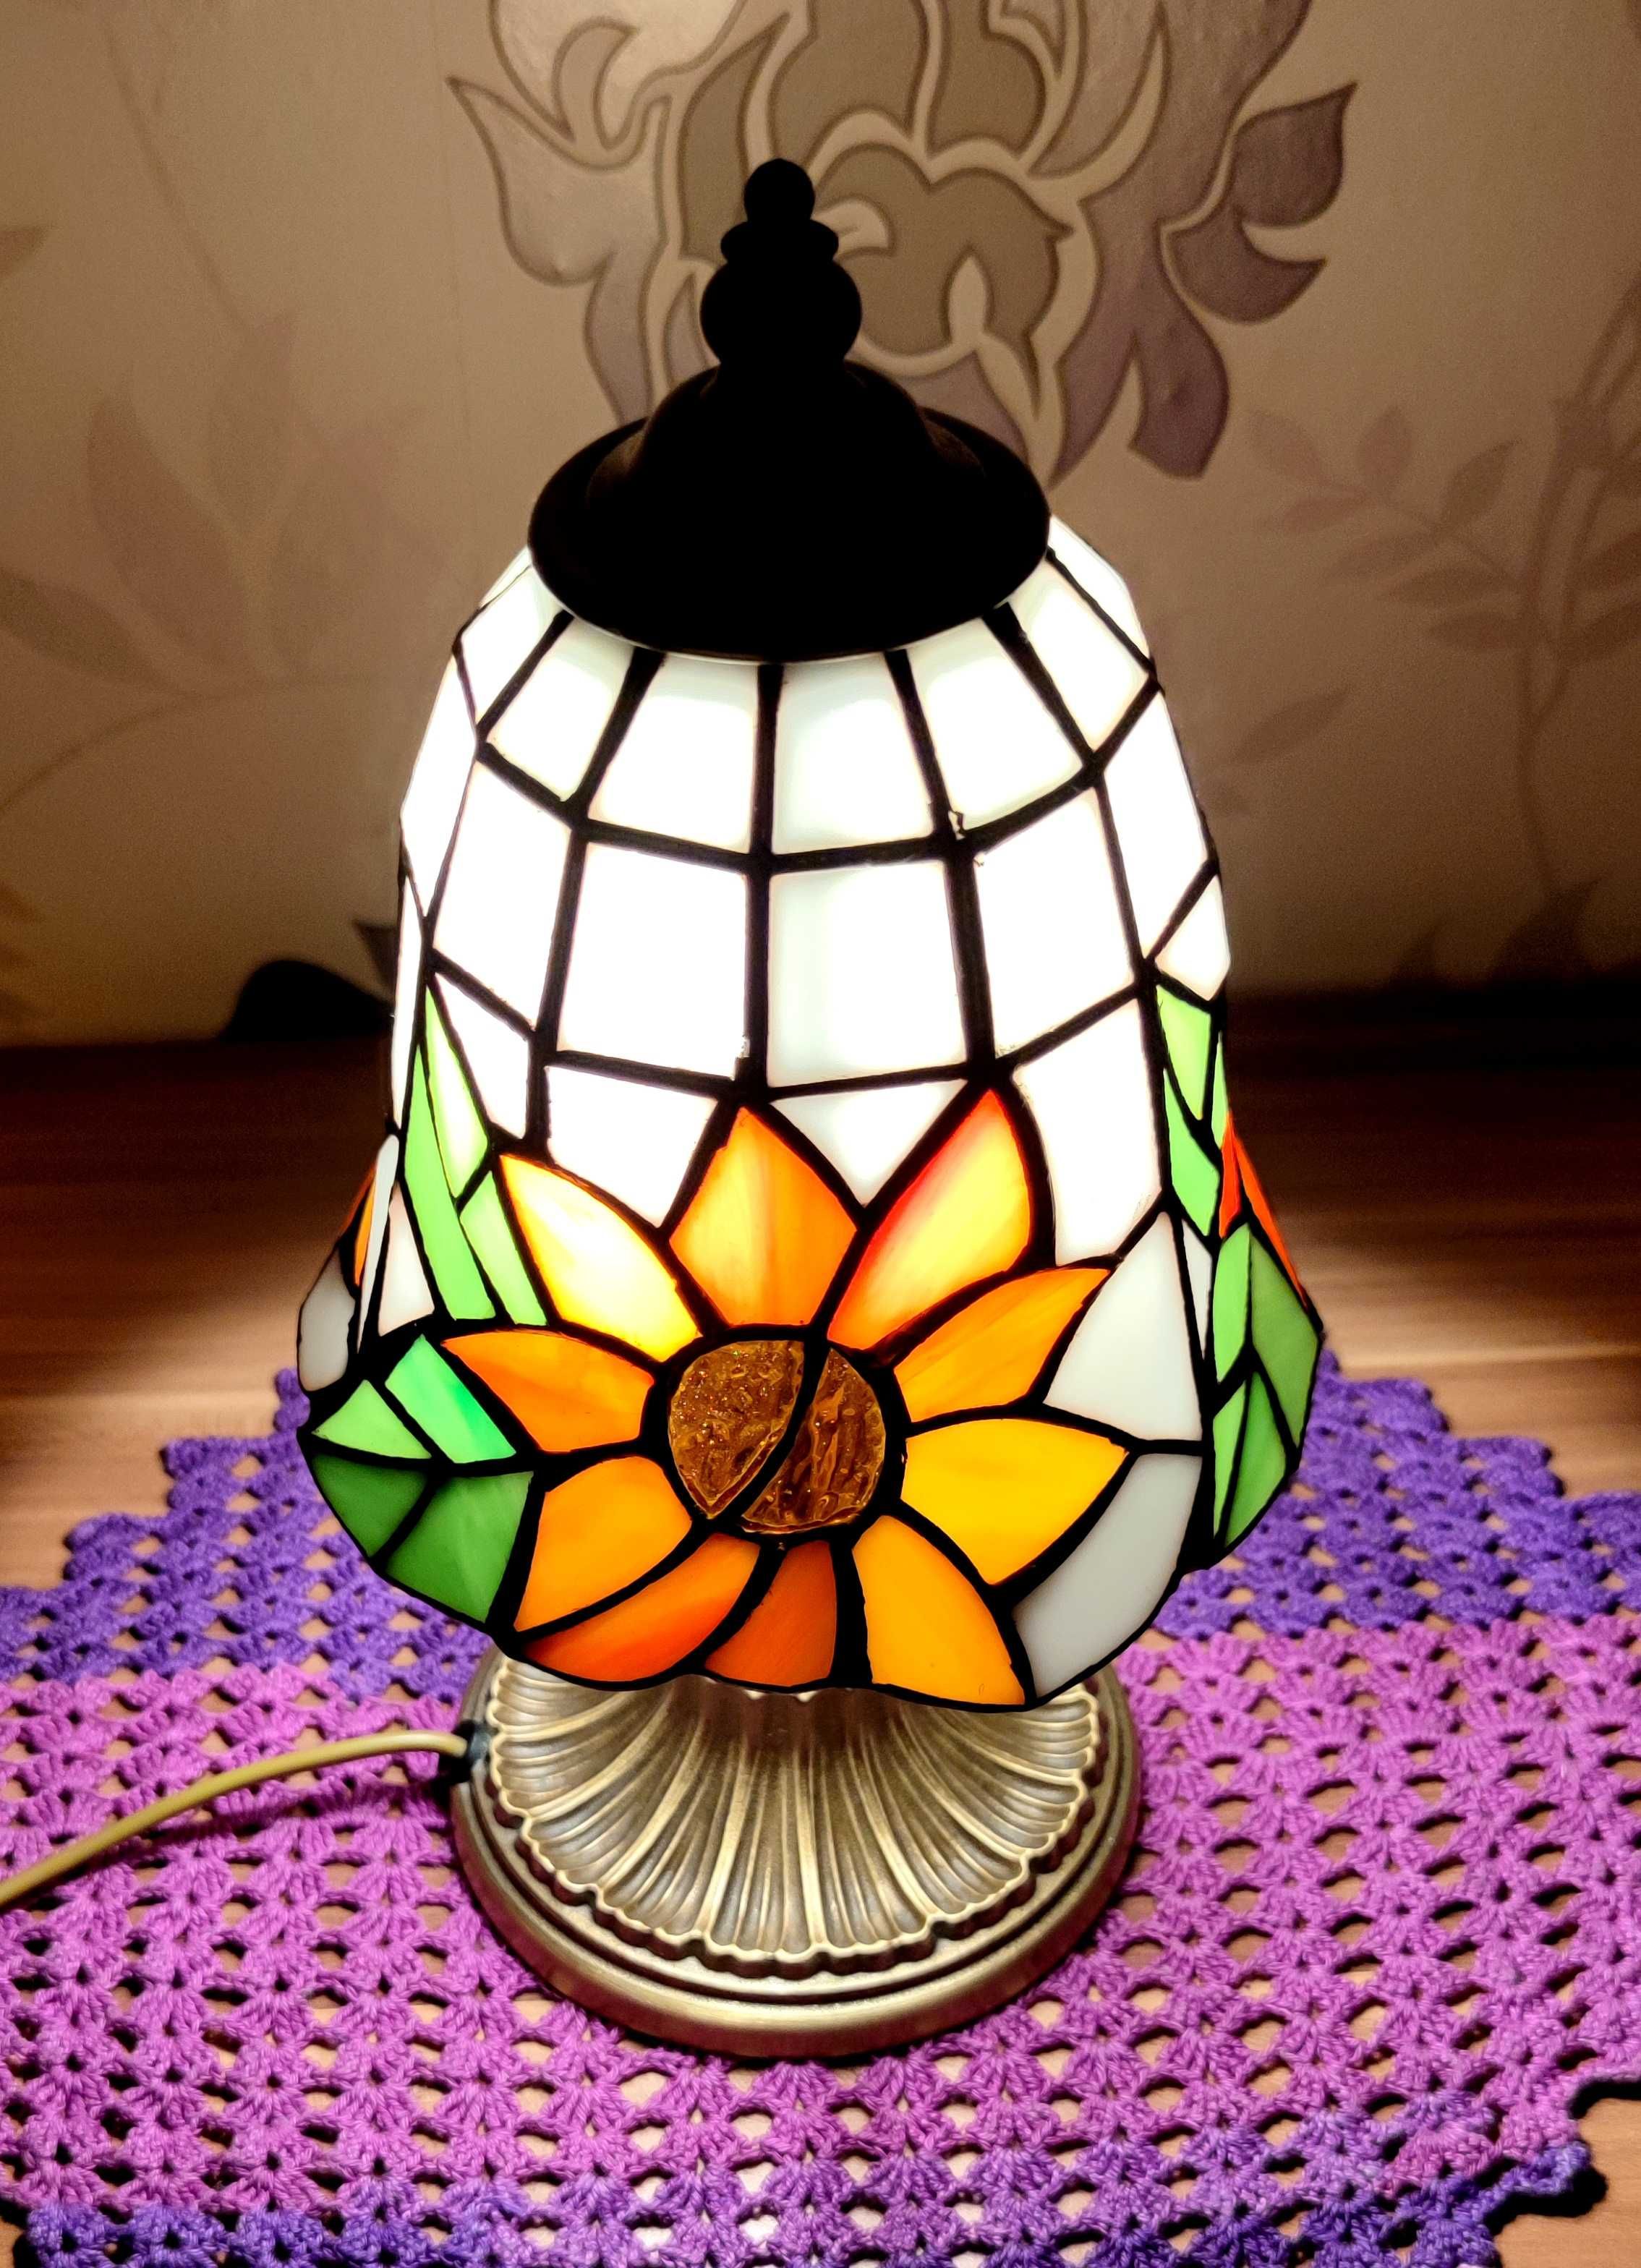 Piękna mała lampka- słoneczniki w stylu Tiffany.